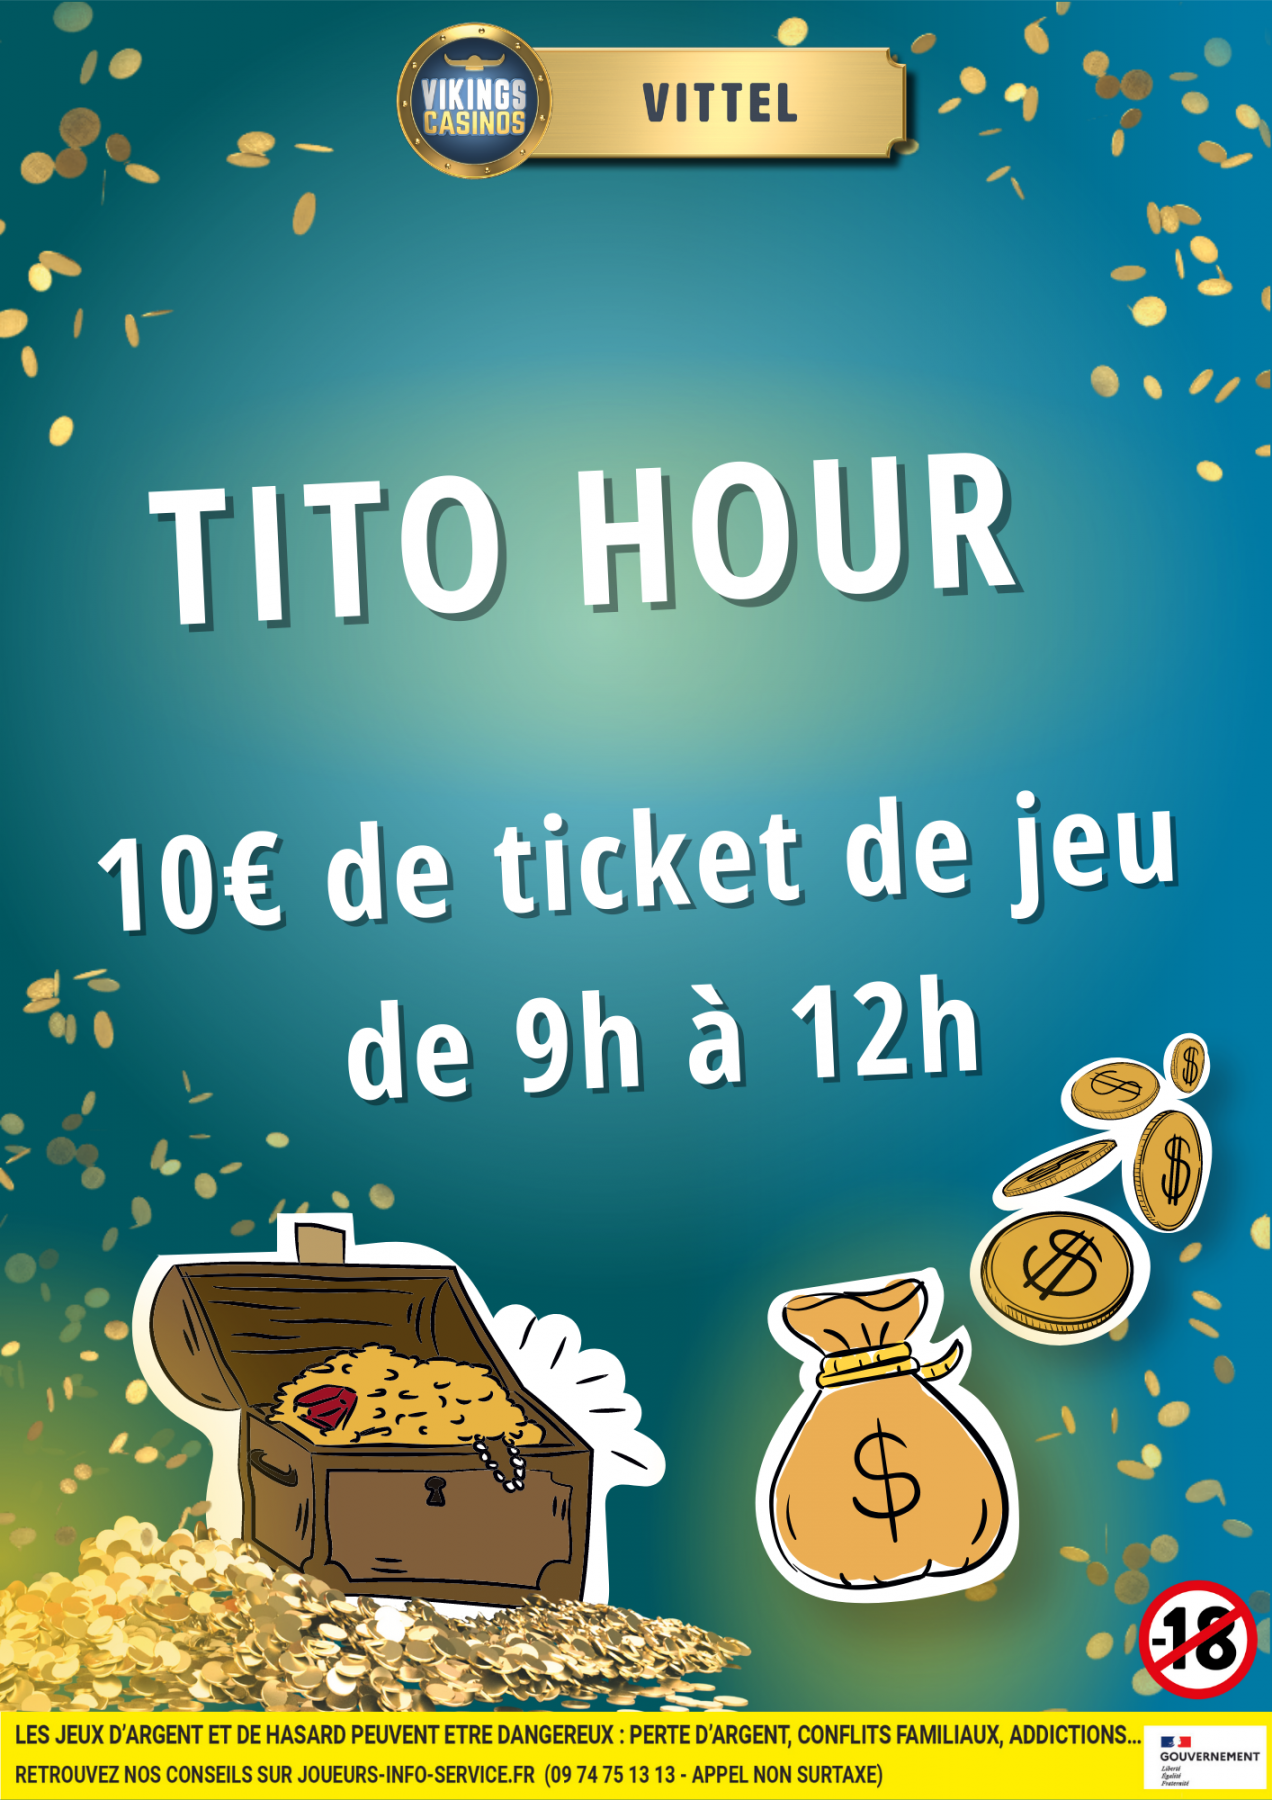 Tito Hour